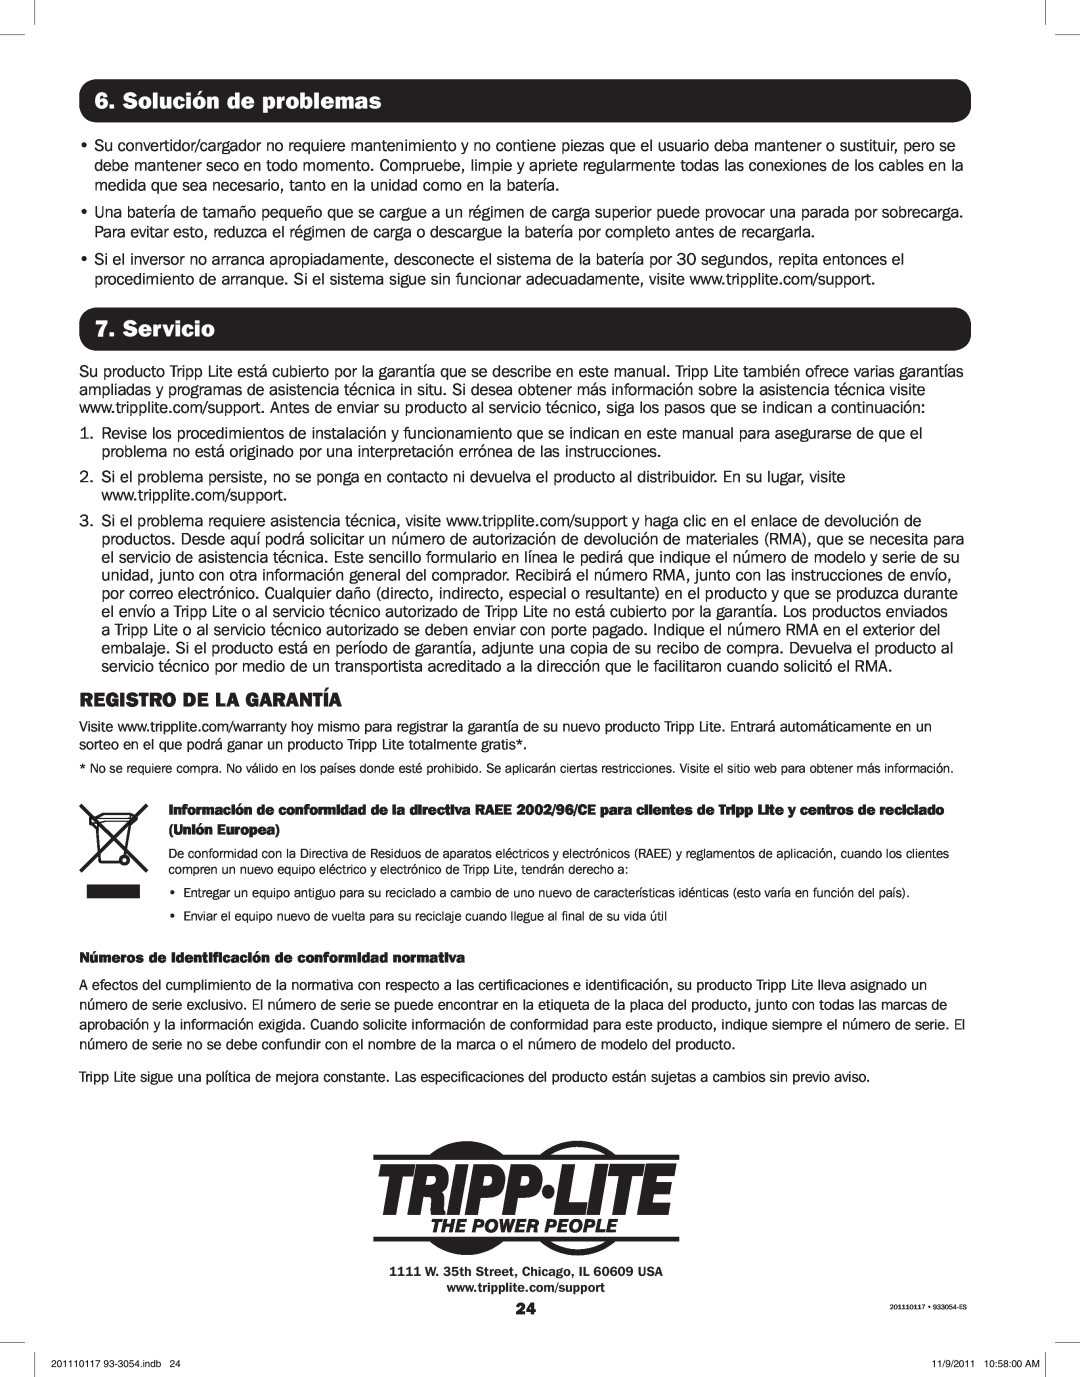 Tripp Lite APSX1012SW, APSX2012SW owner manual Solución de problemas, Servicio, Registro De La Garantía 